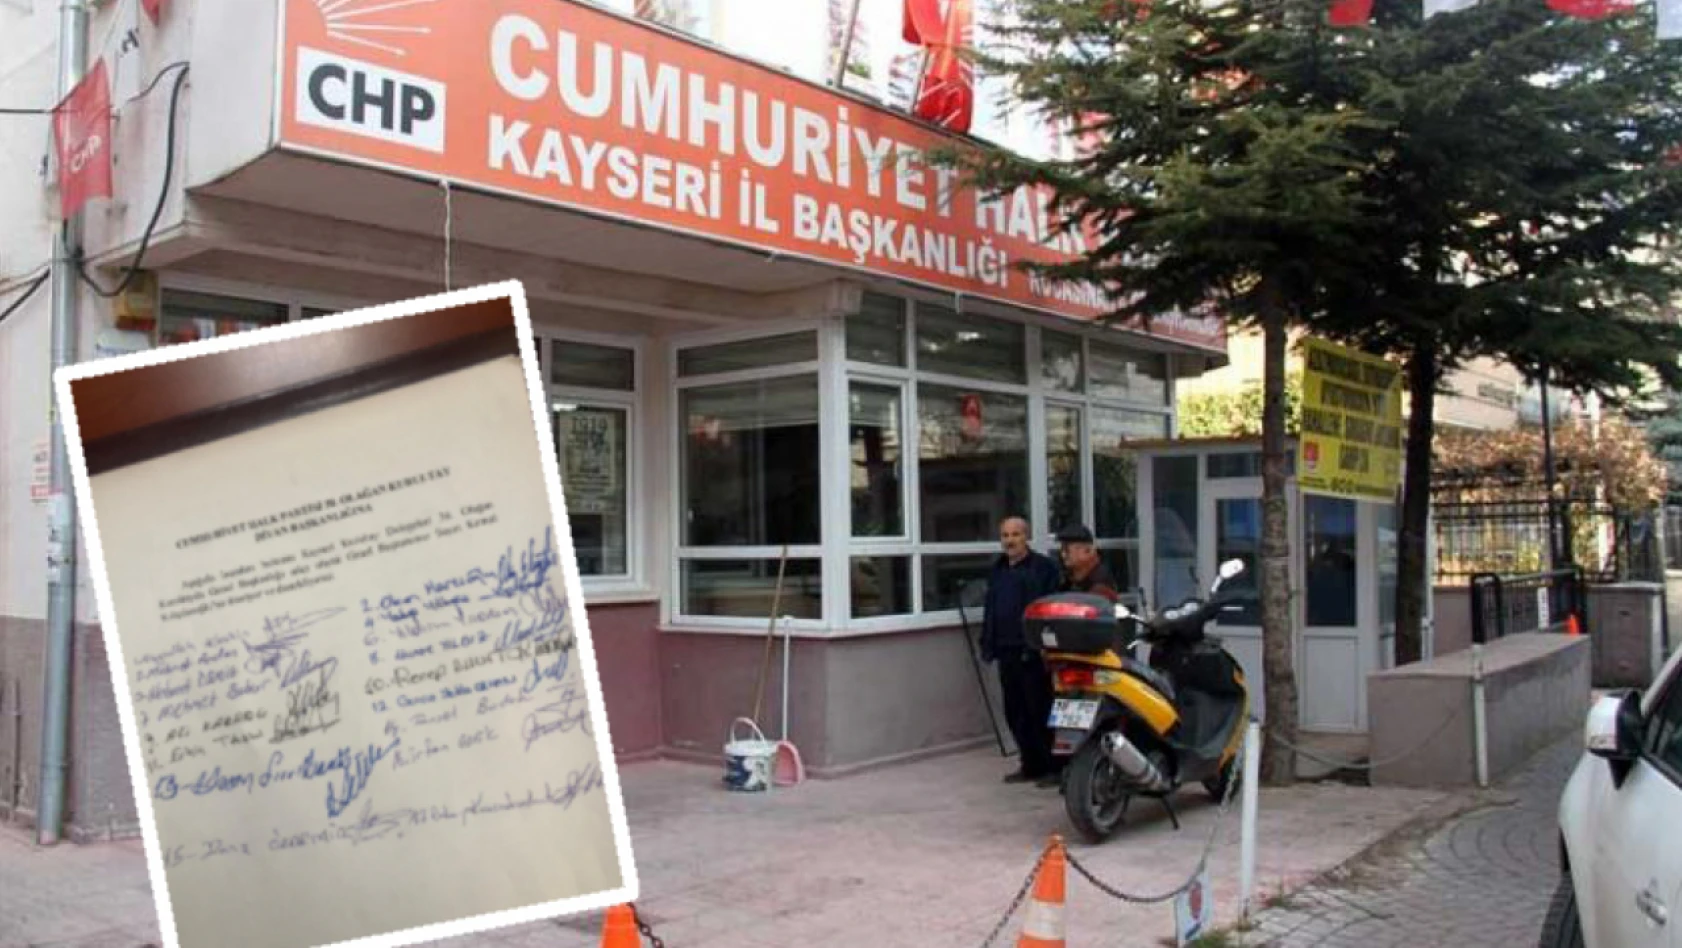 Karar alındı - CHP Kayseri'de kimi destekliyor?